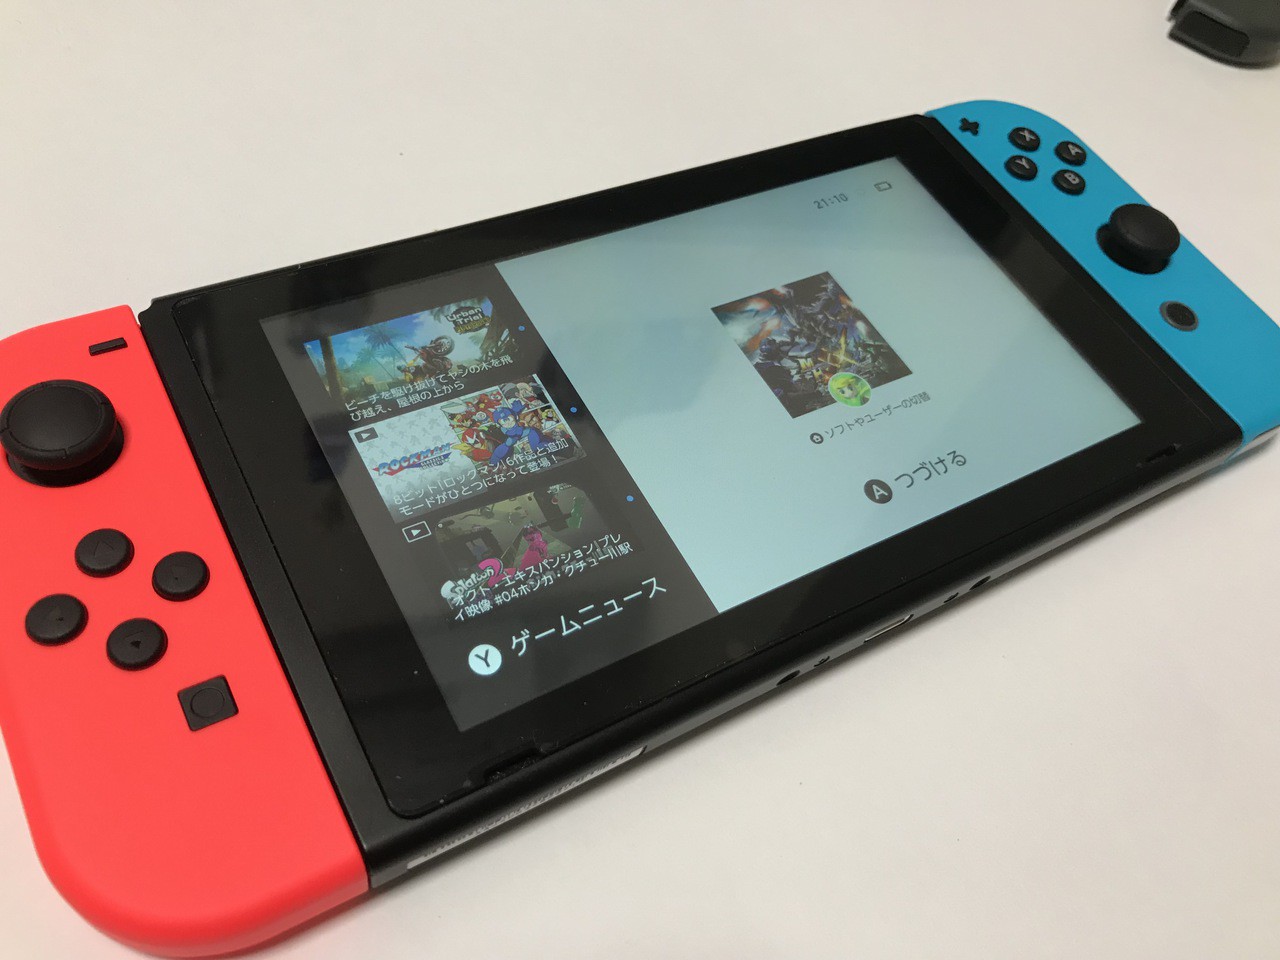 【新品未使用】Nintendo Switch ネオンブルー・ネオンレッド1個Joy-Conネオンレッド